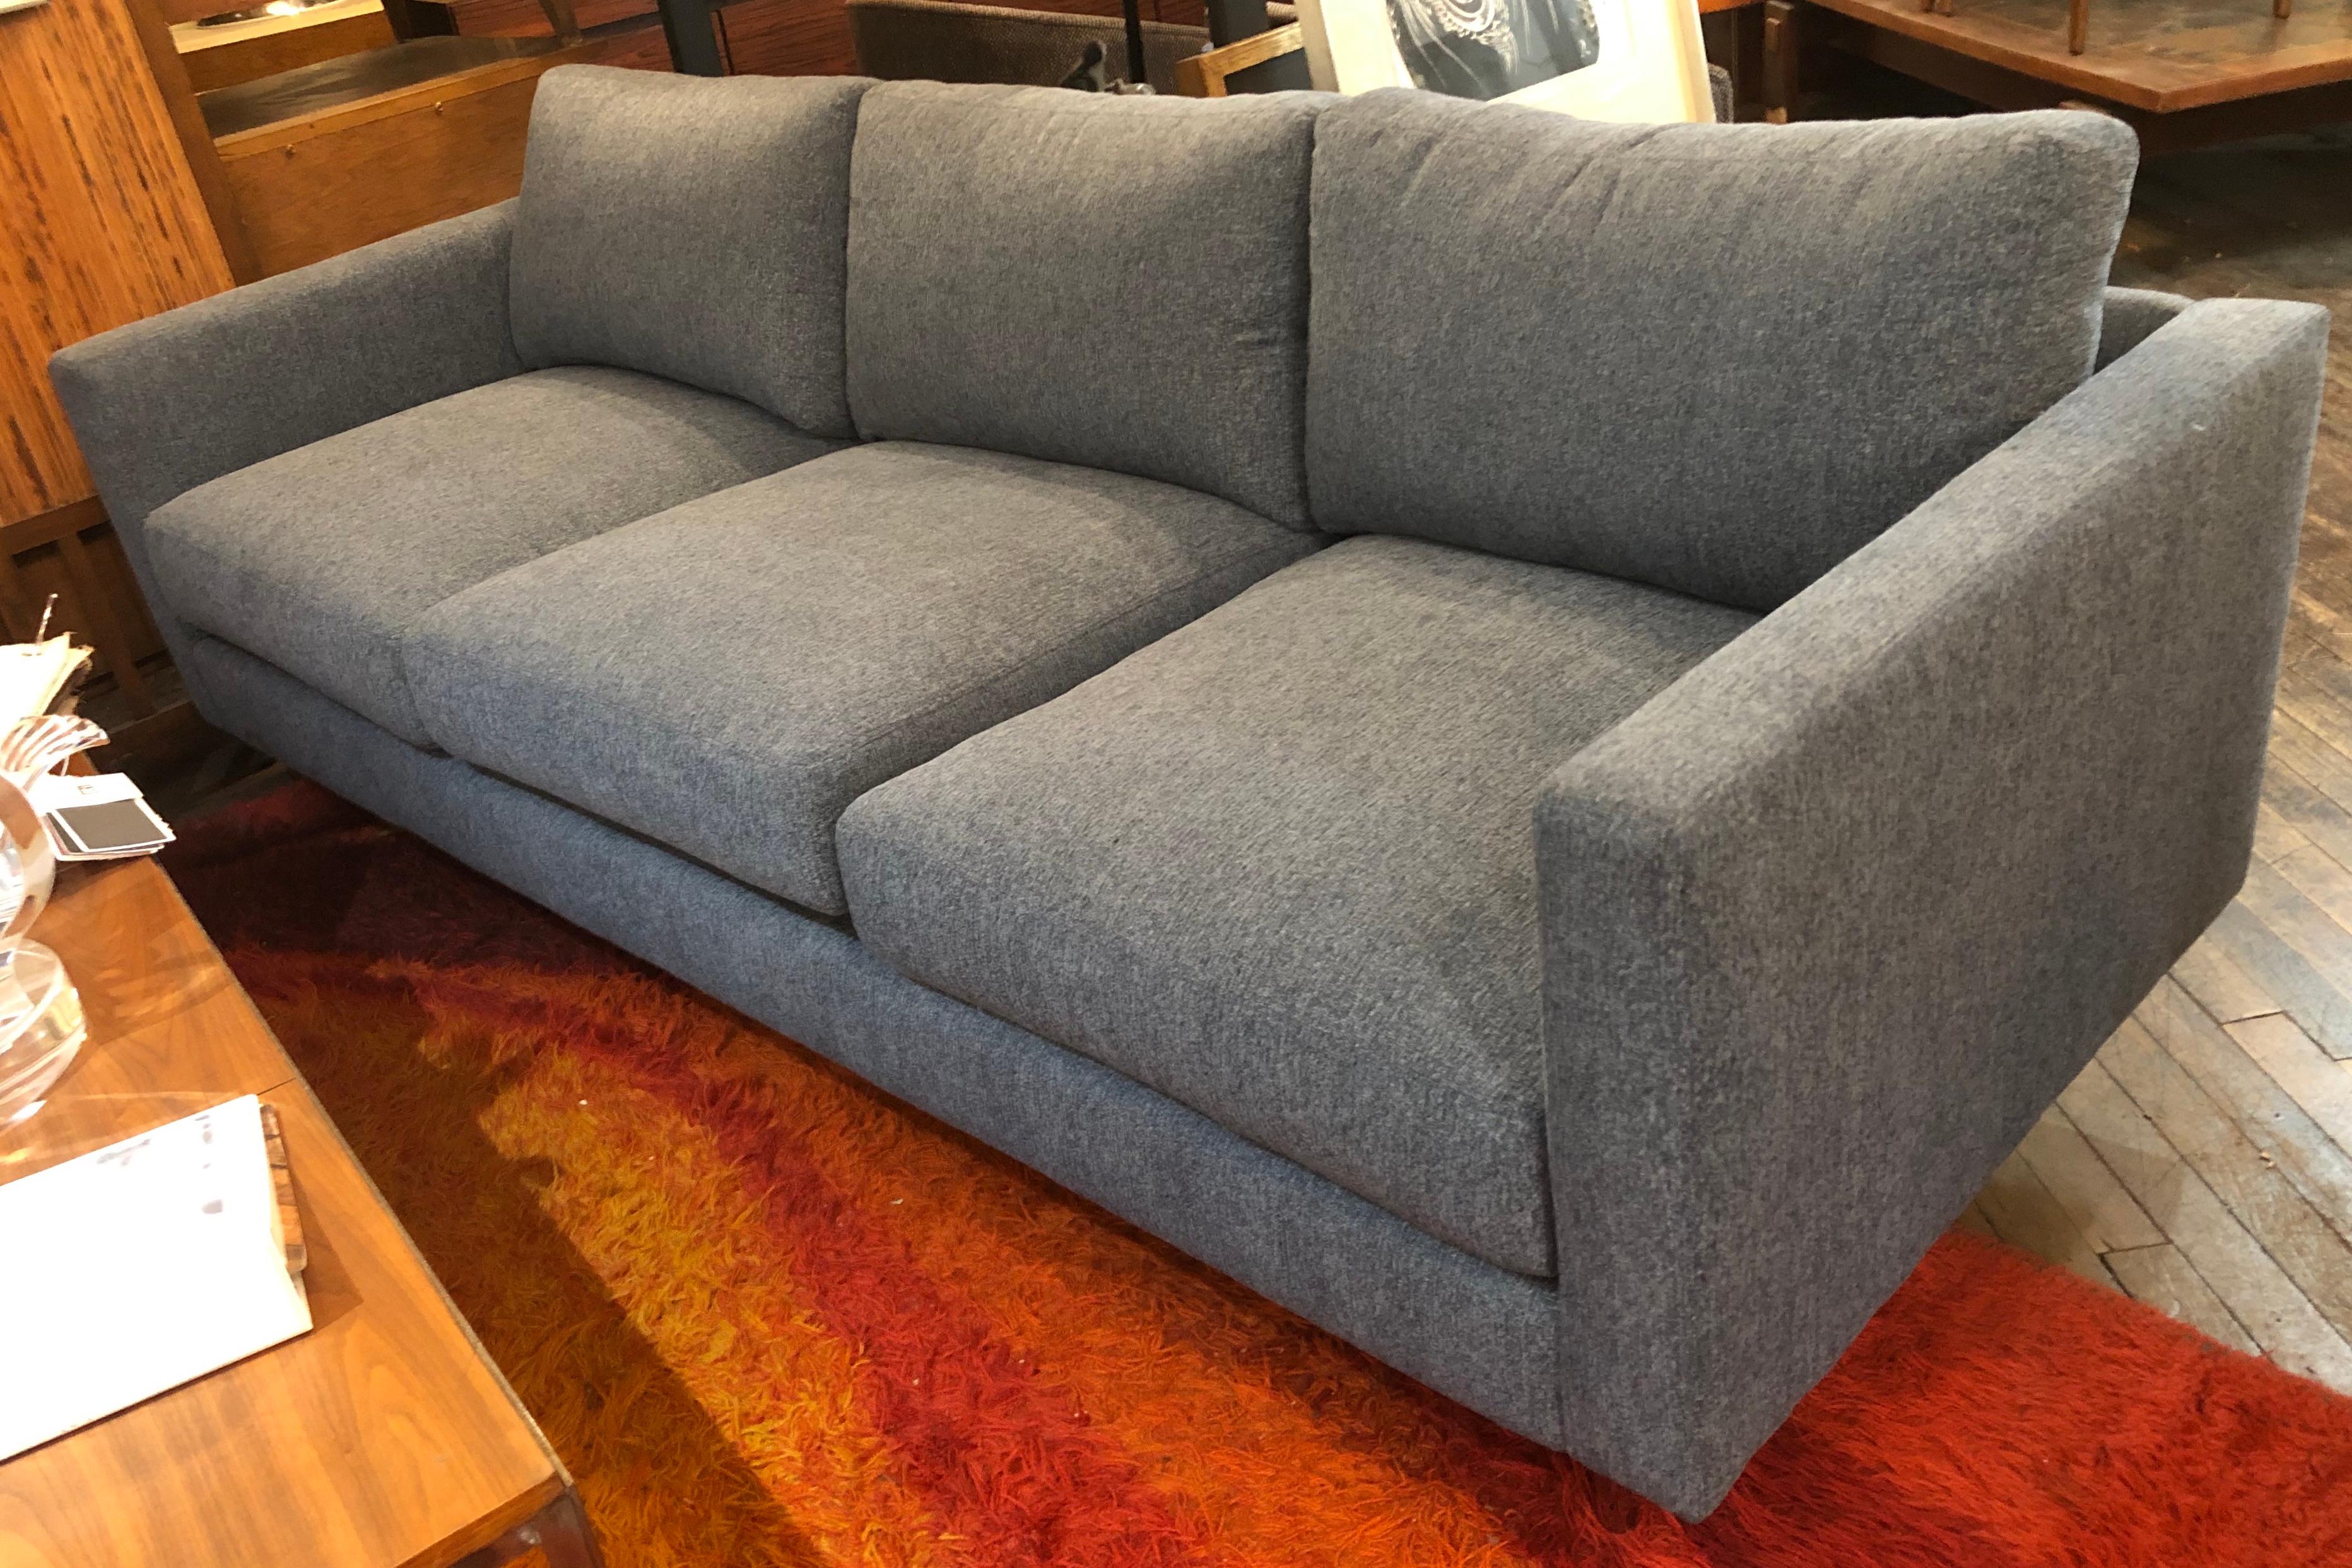 Conçu par Milo Baughman en 1964, ce canapé simple et élégant s'intègre toujours parfaitement dans une maison moderne. Trois sièges moelleux, cadre entièrement rembourré, monté sur des pieds en chrome poli. Recouvert d'un tissu en polyester